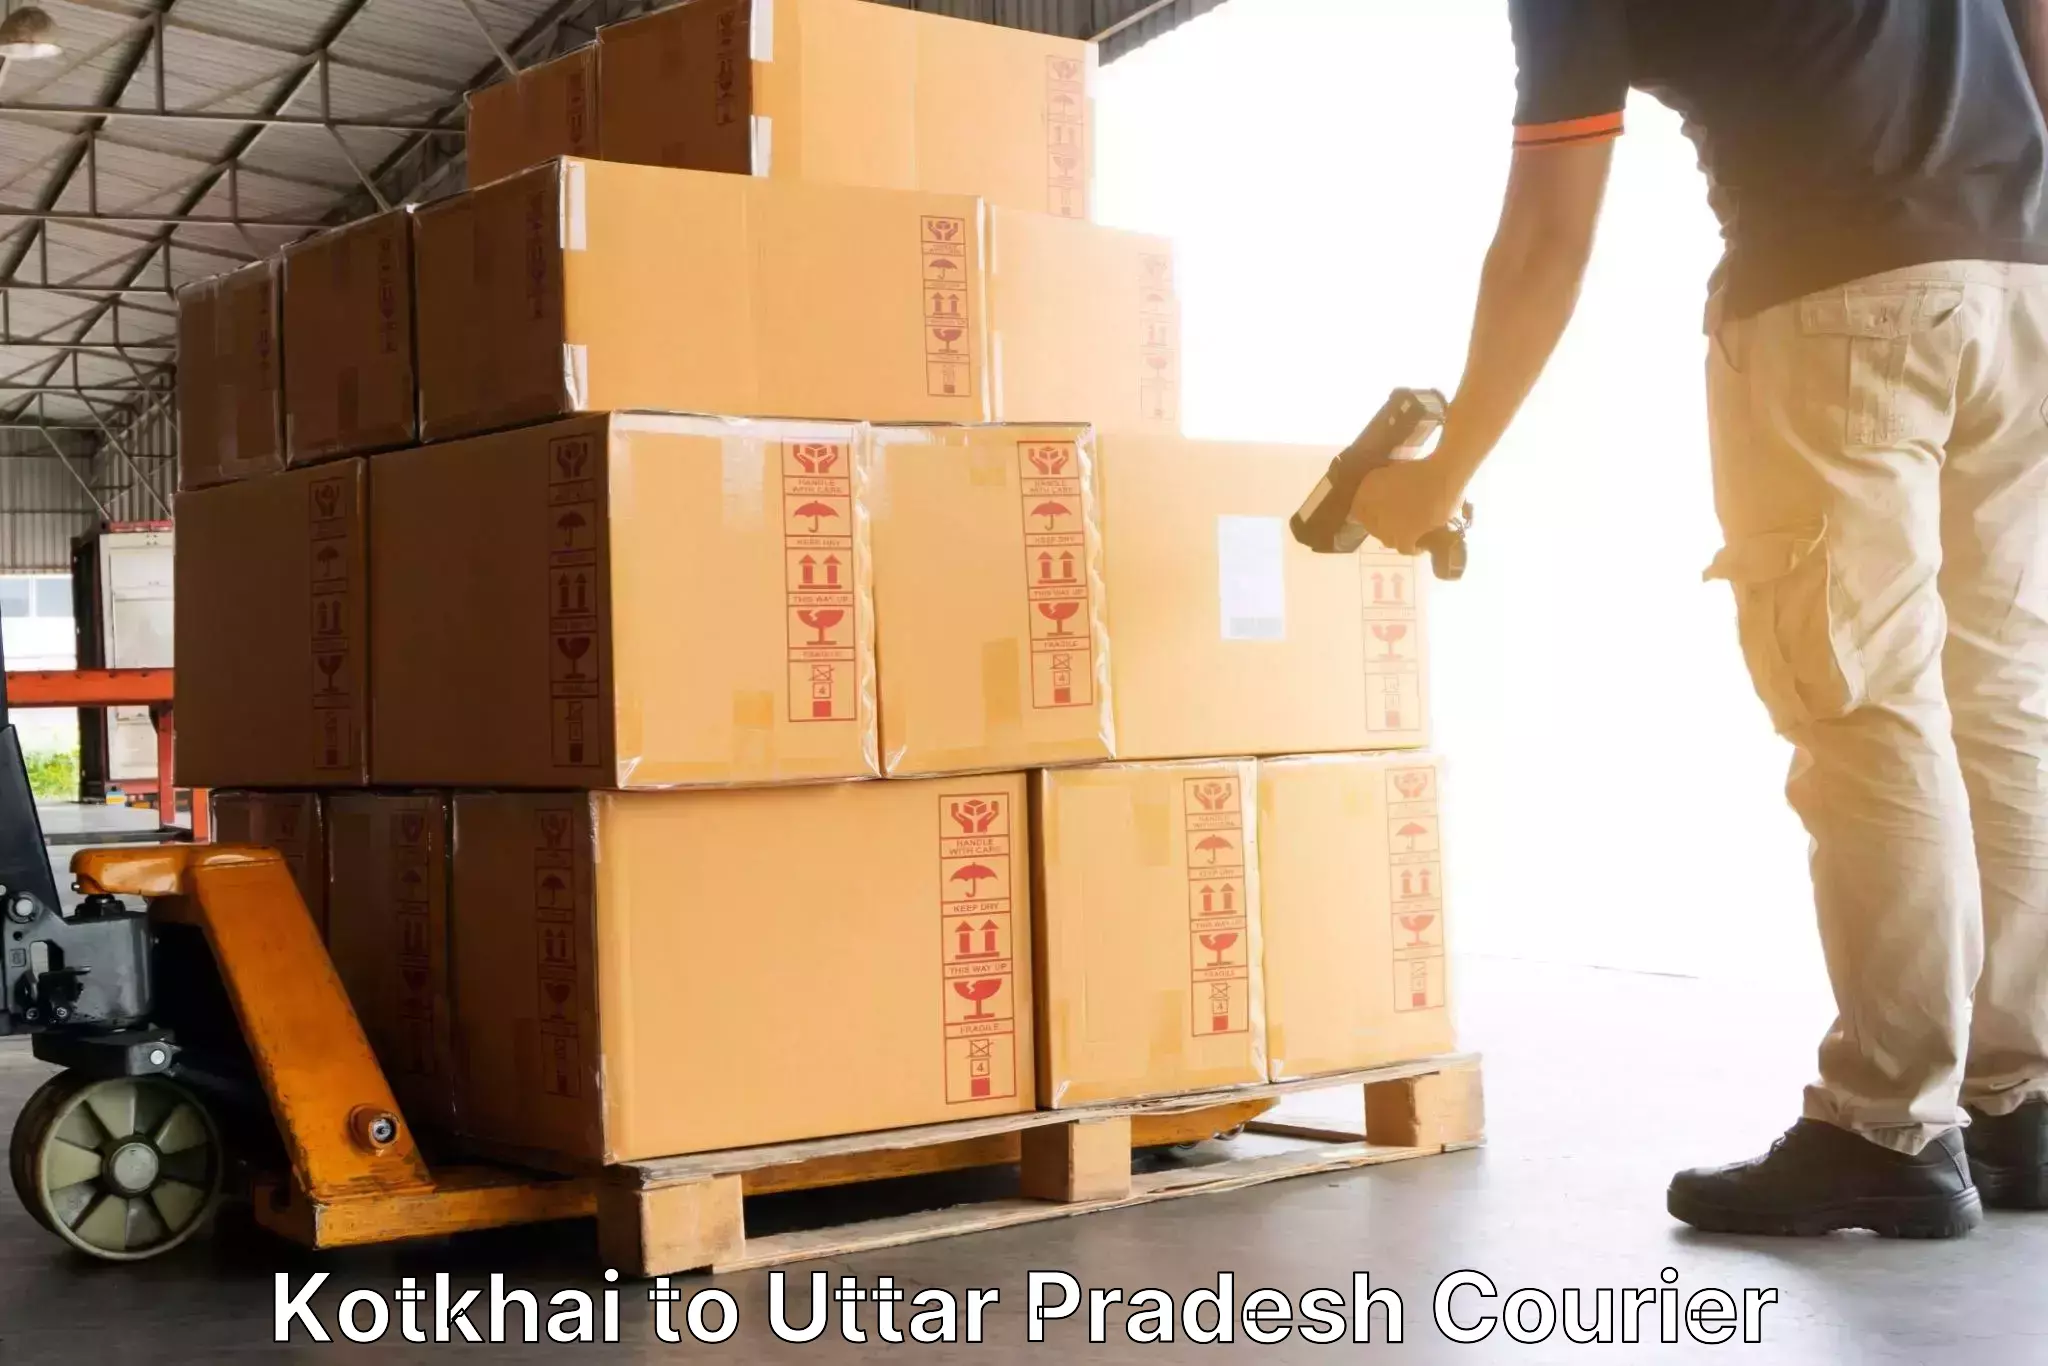 User-friendly delivery service Kotkhai to Gopiganj